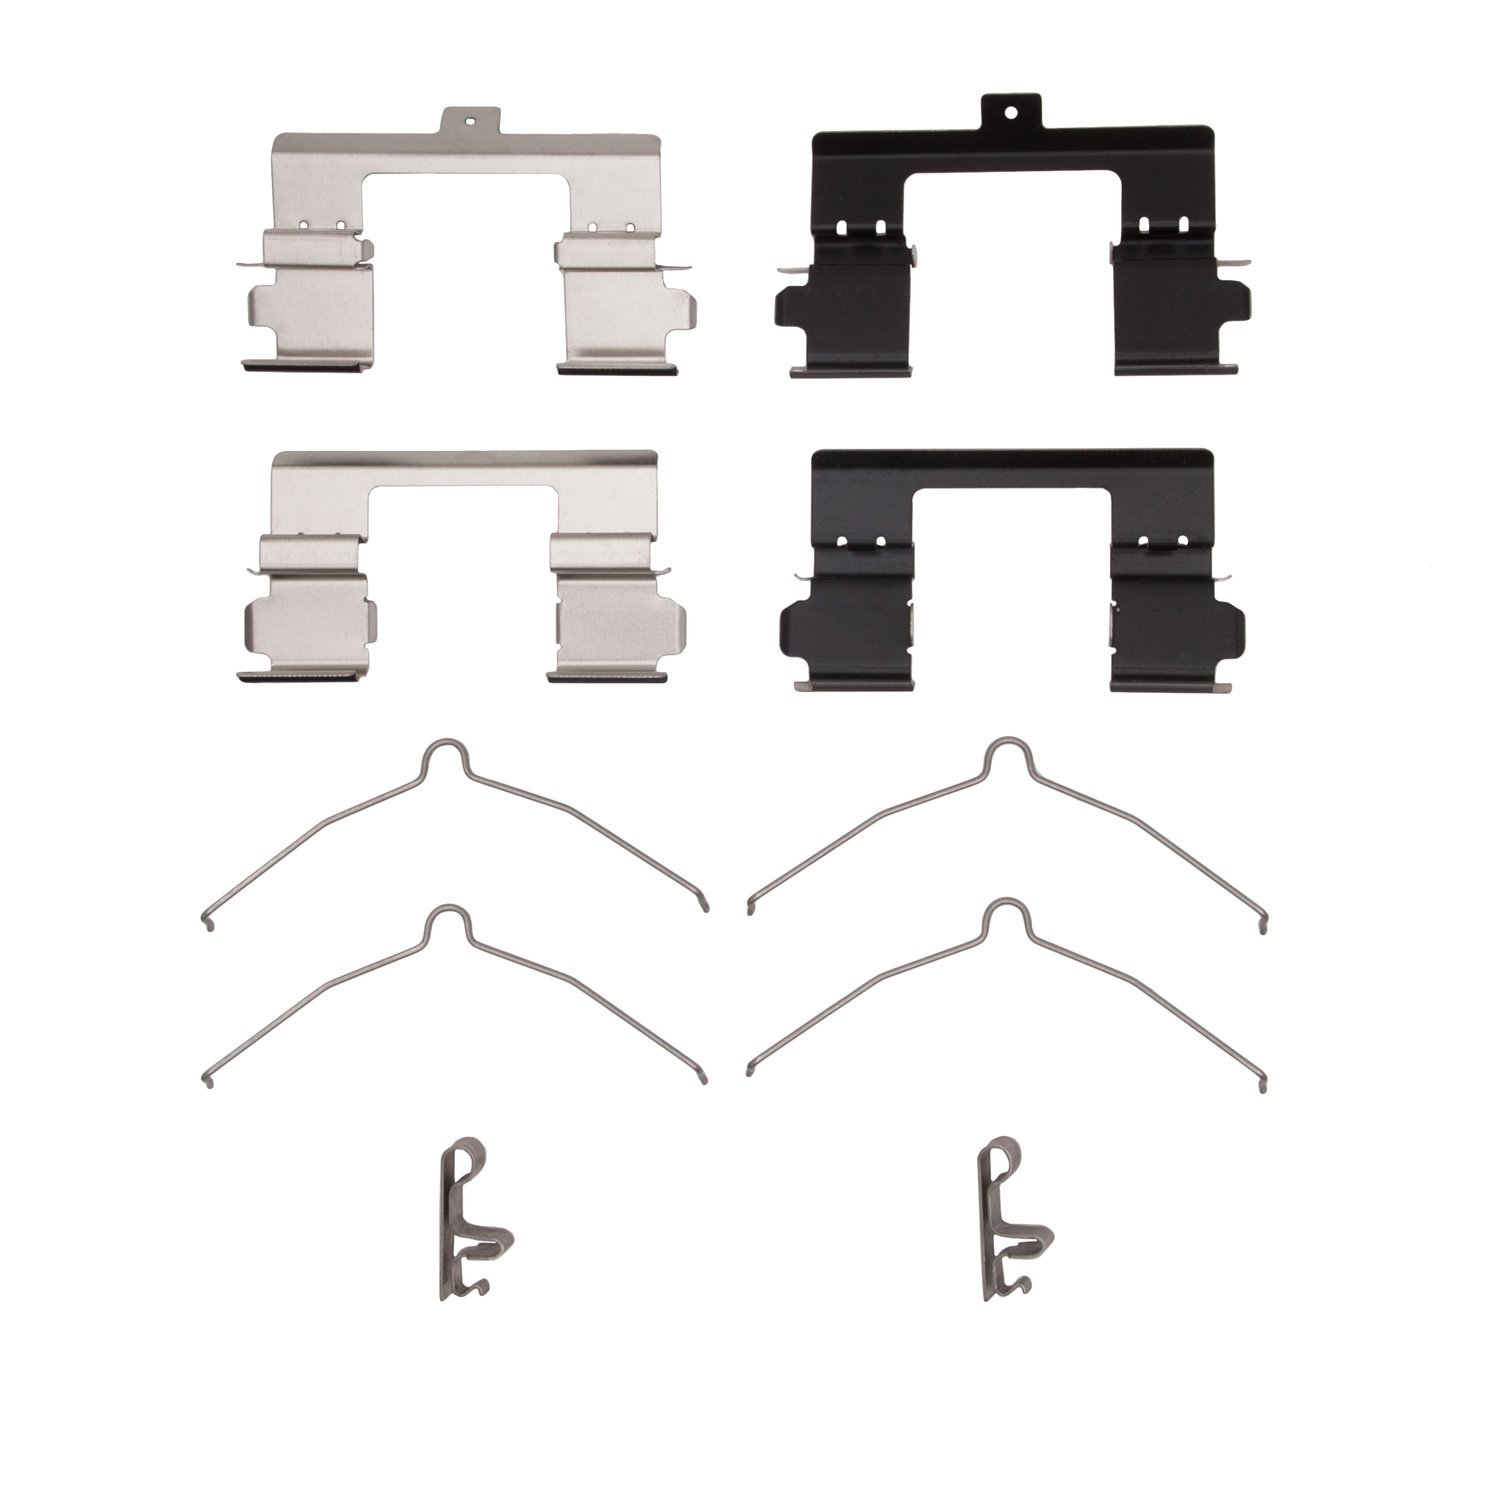 340-67038 Disc Brake Hardware Kit, Fits Select Multiple Makes/Models, Position: Front